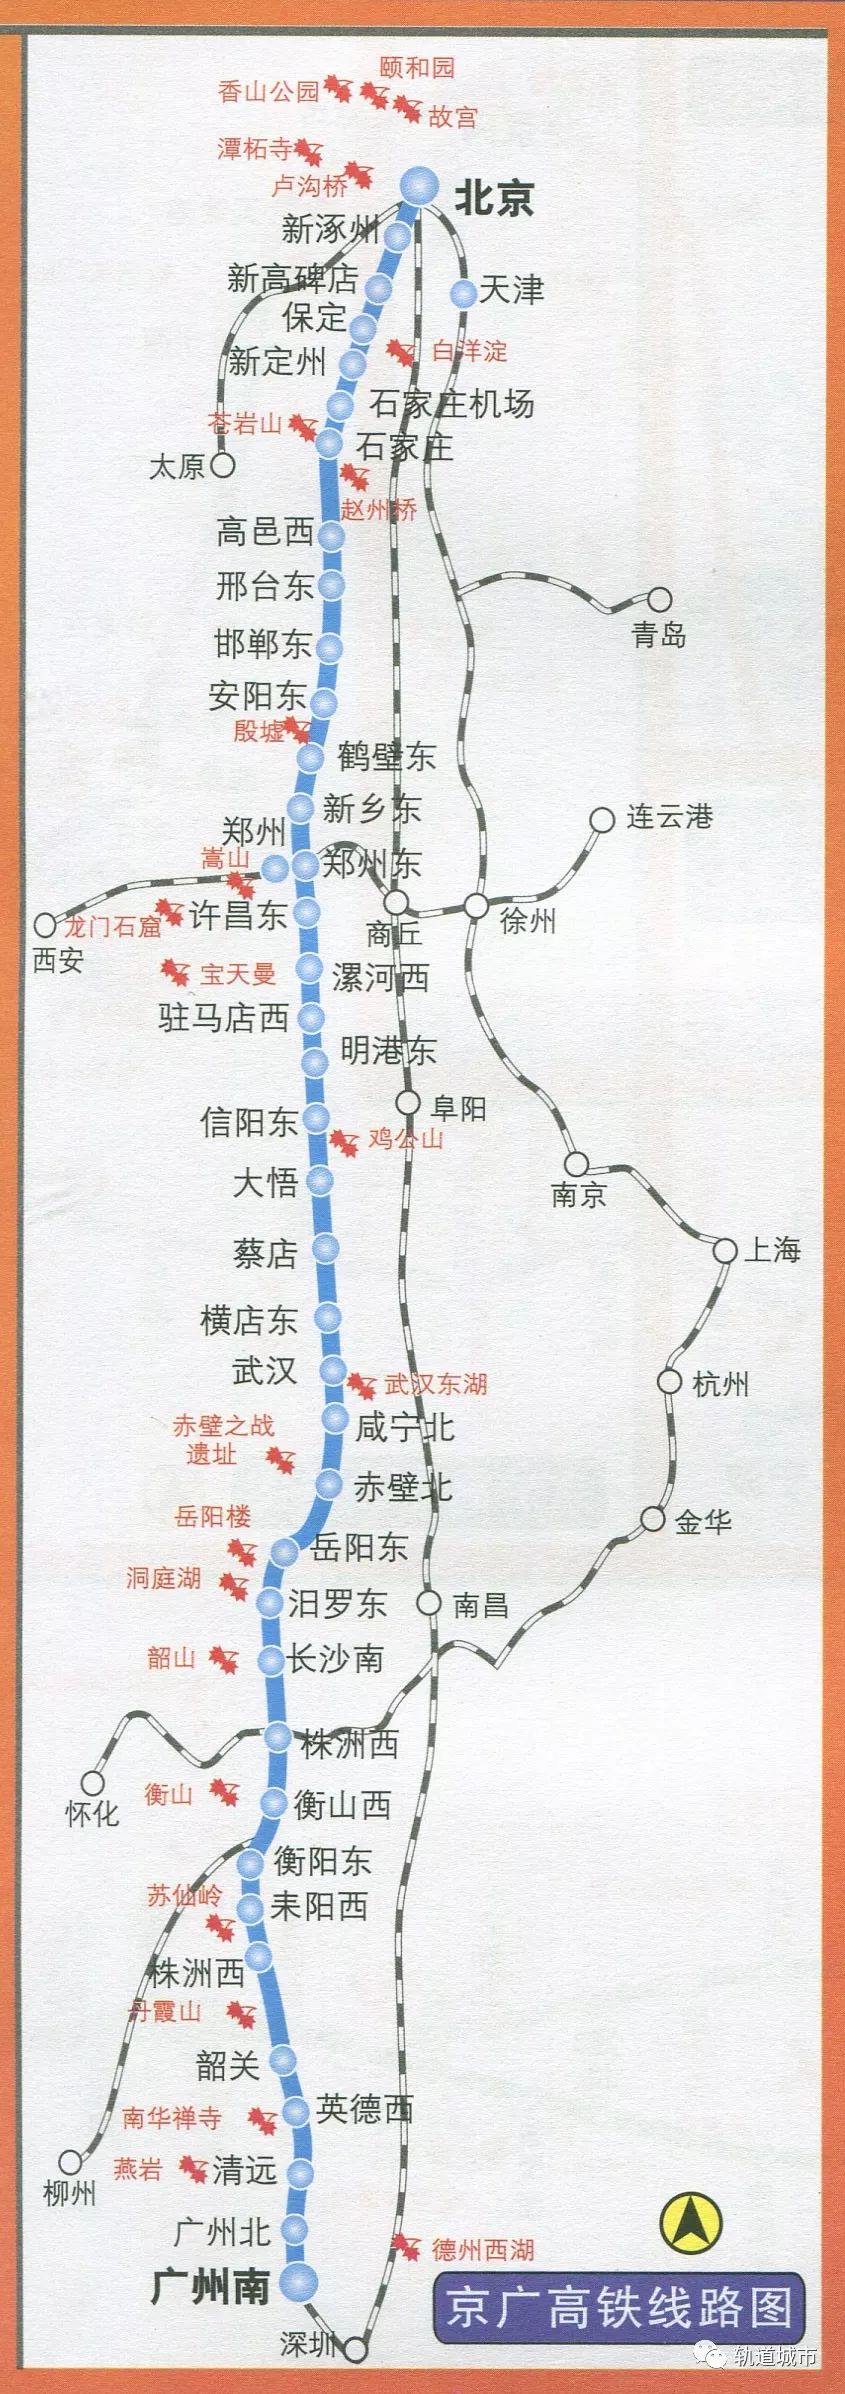 京广高铁将实现350公里时速 正实施换轨等准备工作